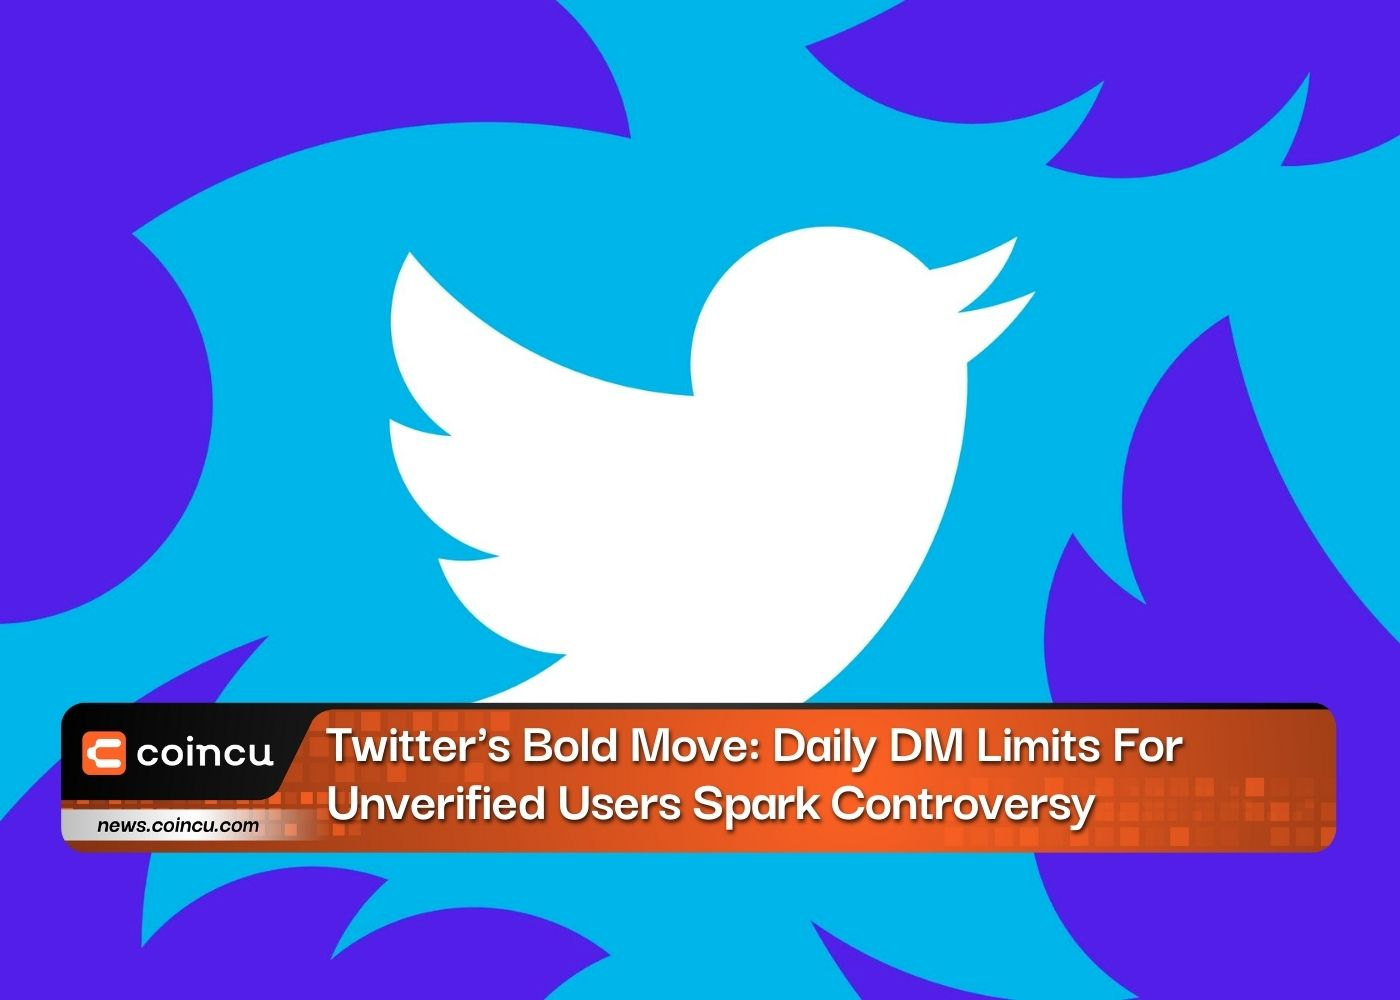 Twitterの大胆な行動: 未認証ユーザーに対するXNUMX日のDM制限が論争を引き起こす